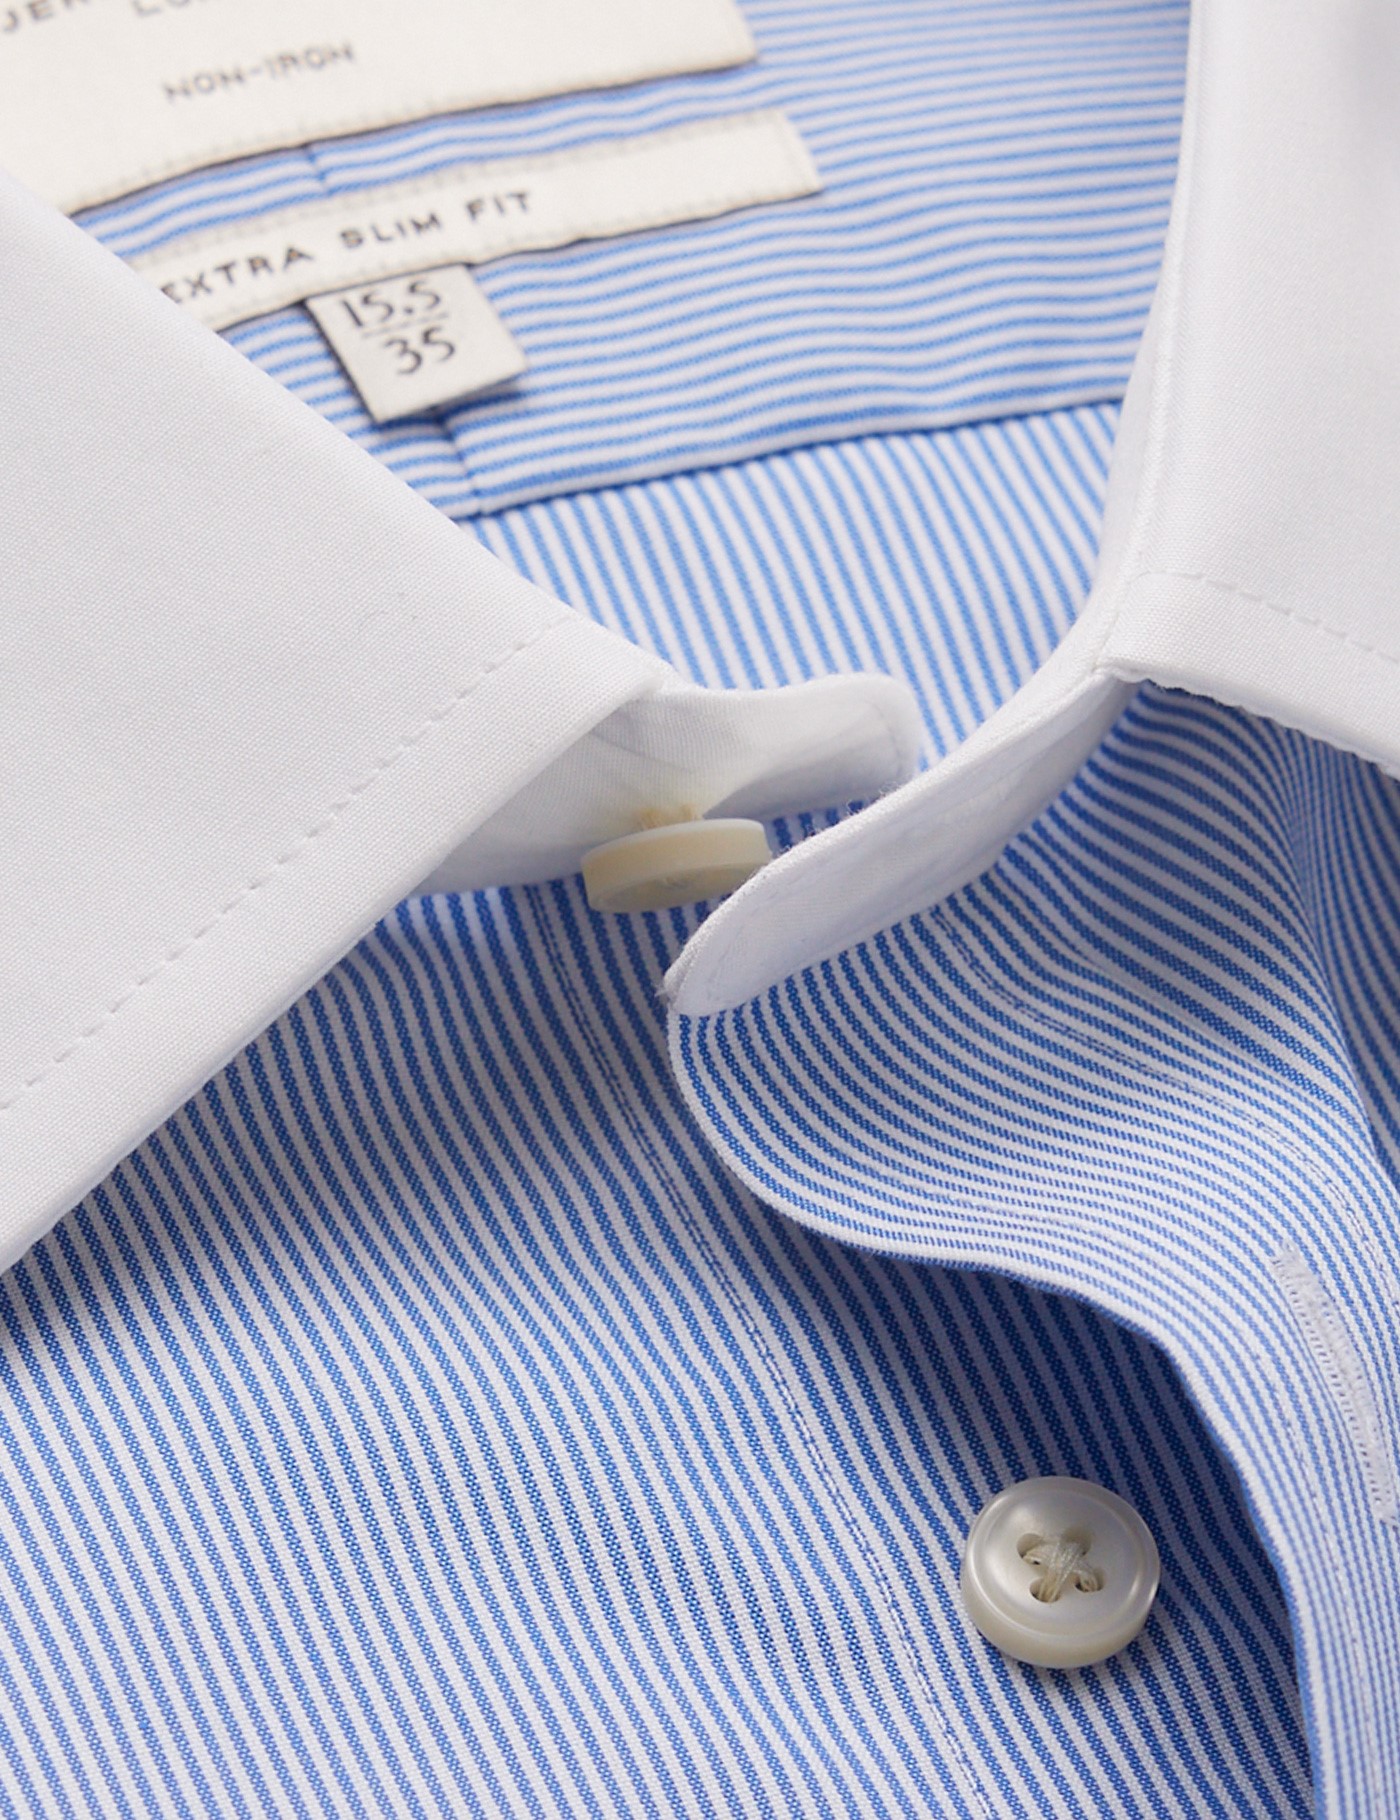 Non-Iron Blue & White Fine Stripe Extra Slim Shirt With White Collar ...